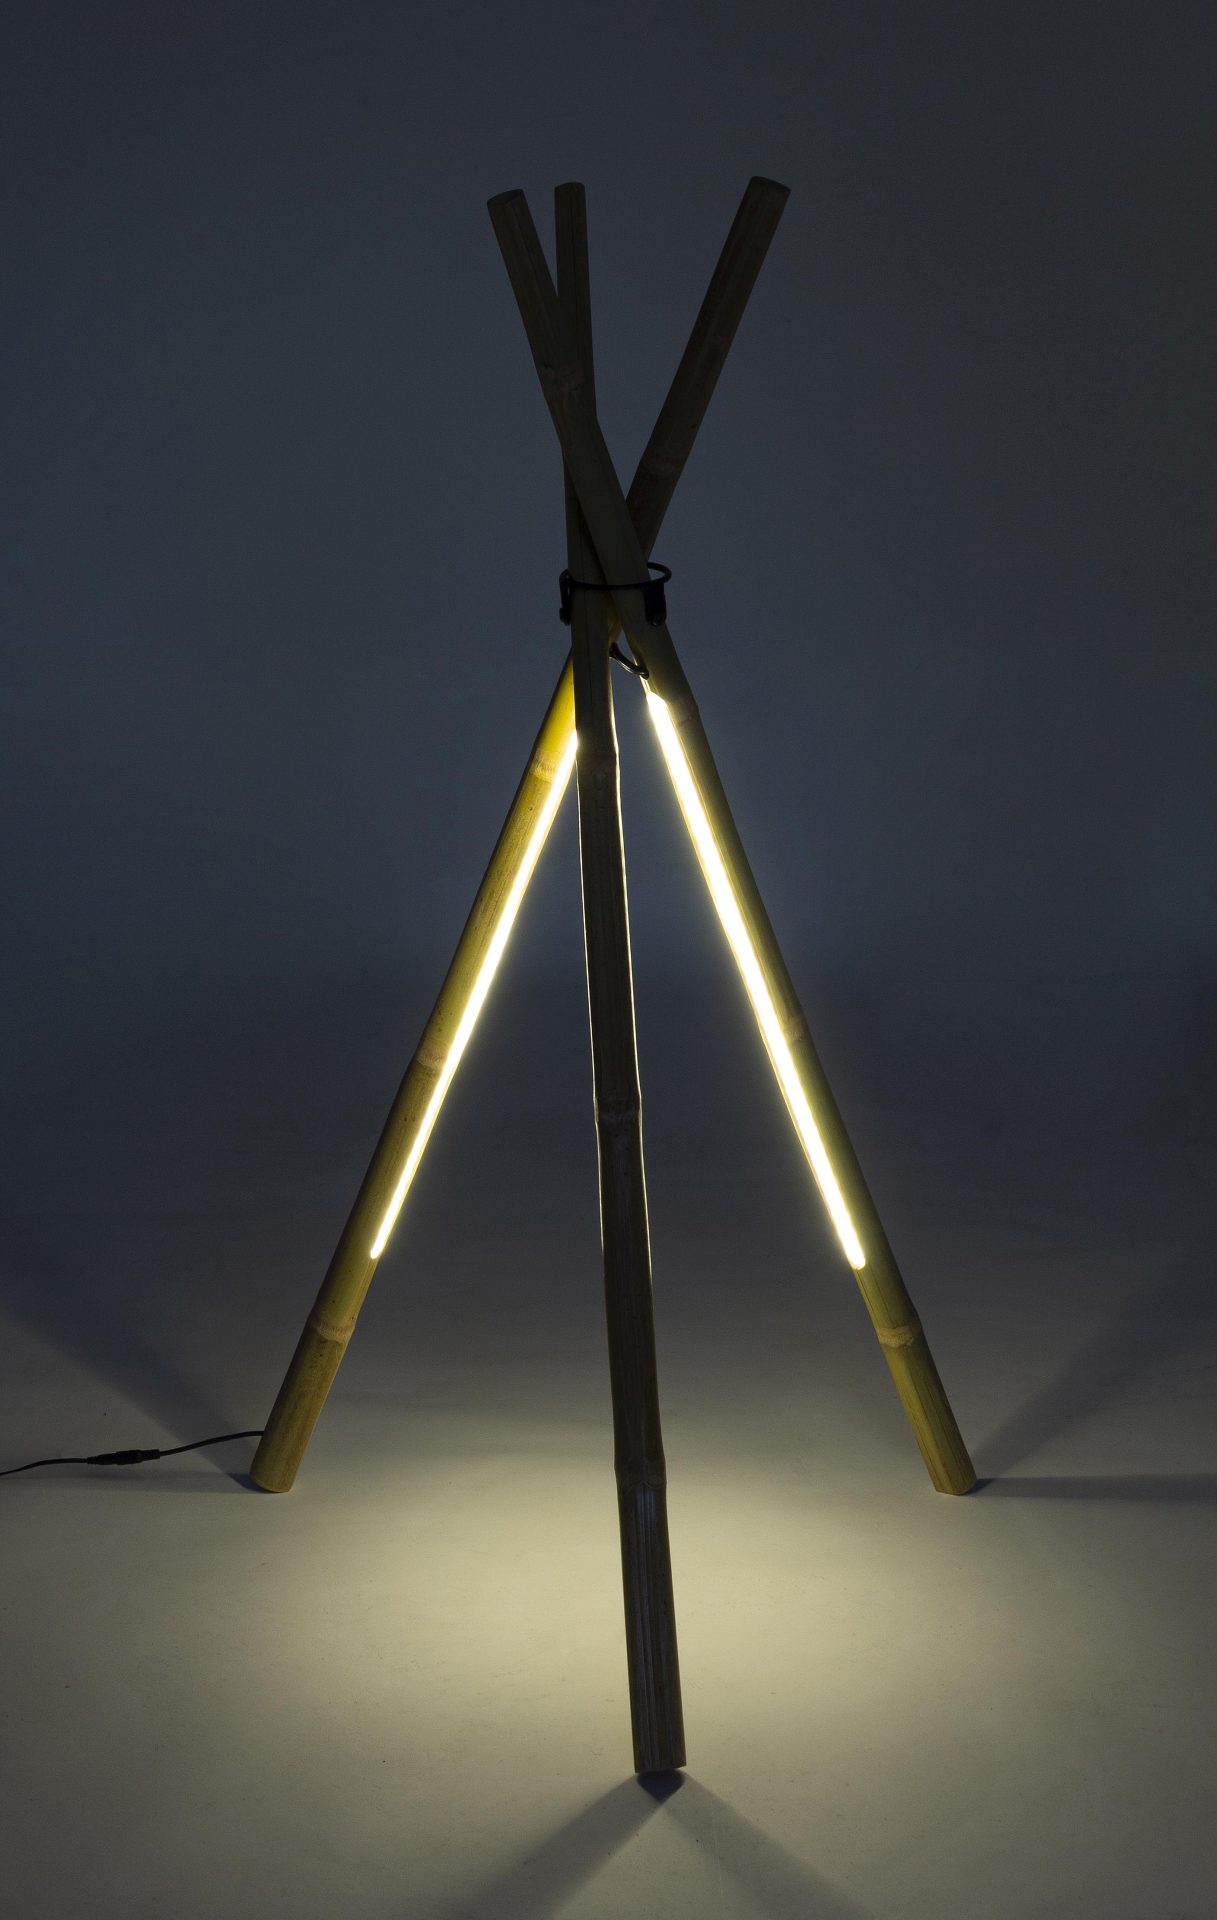 Die Stehleuchte LED überzeugt mit ihrem klassischen Design. Gefertigt wurde sie aus Bambus, welches einen natürlichen Farbton besitzt. Die Lichtquellen sind als Lichtstreifen angebracht. Die Lampe besitzt eine Höhe von 109 cm.